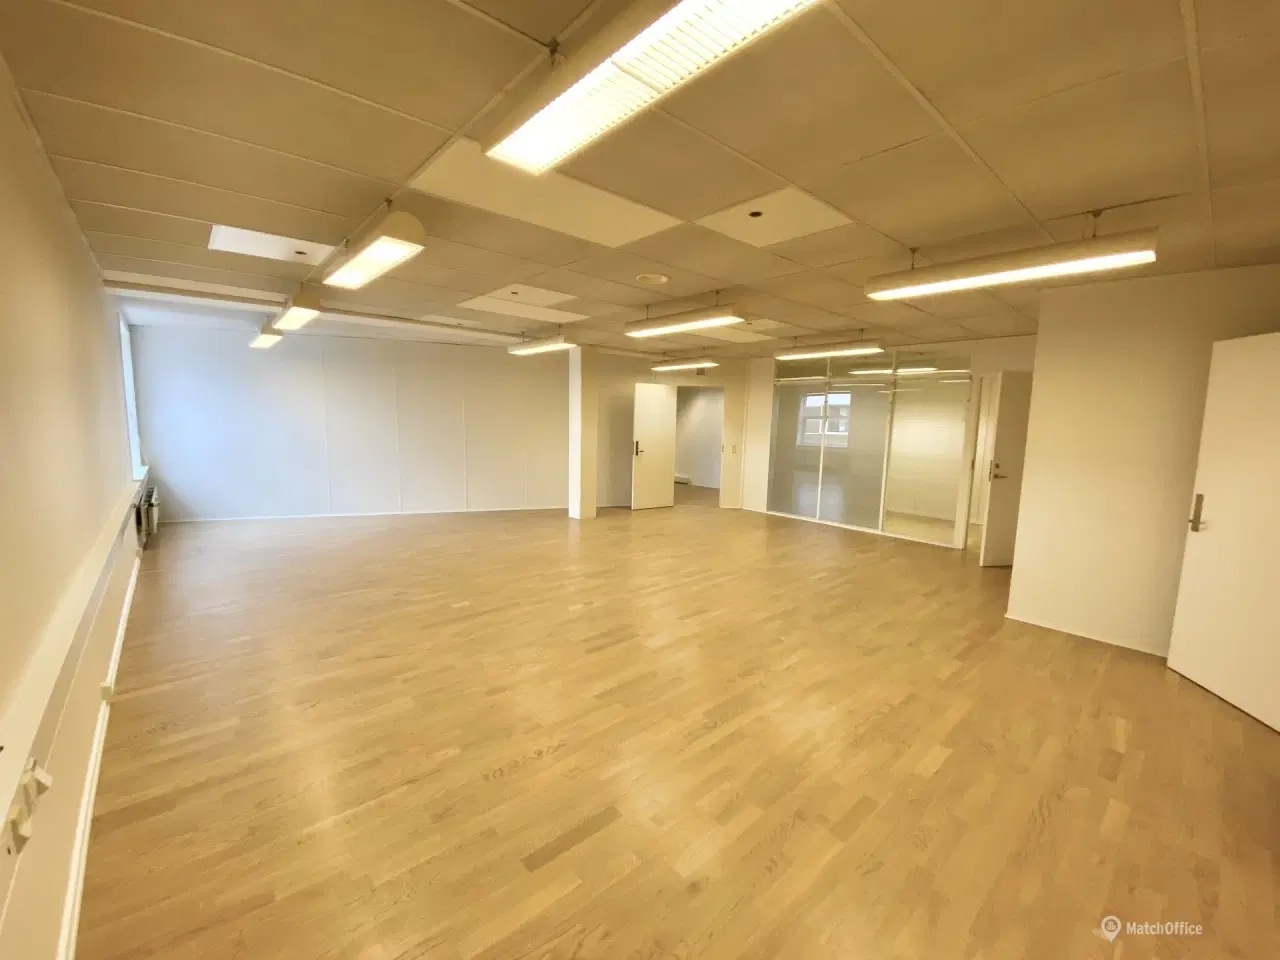 Billede 10 - 210 m² kontorlokaler udlejes i Middelfart Midtpunkt